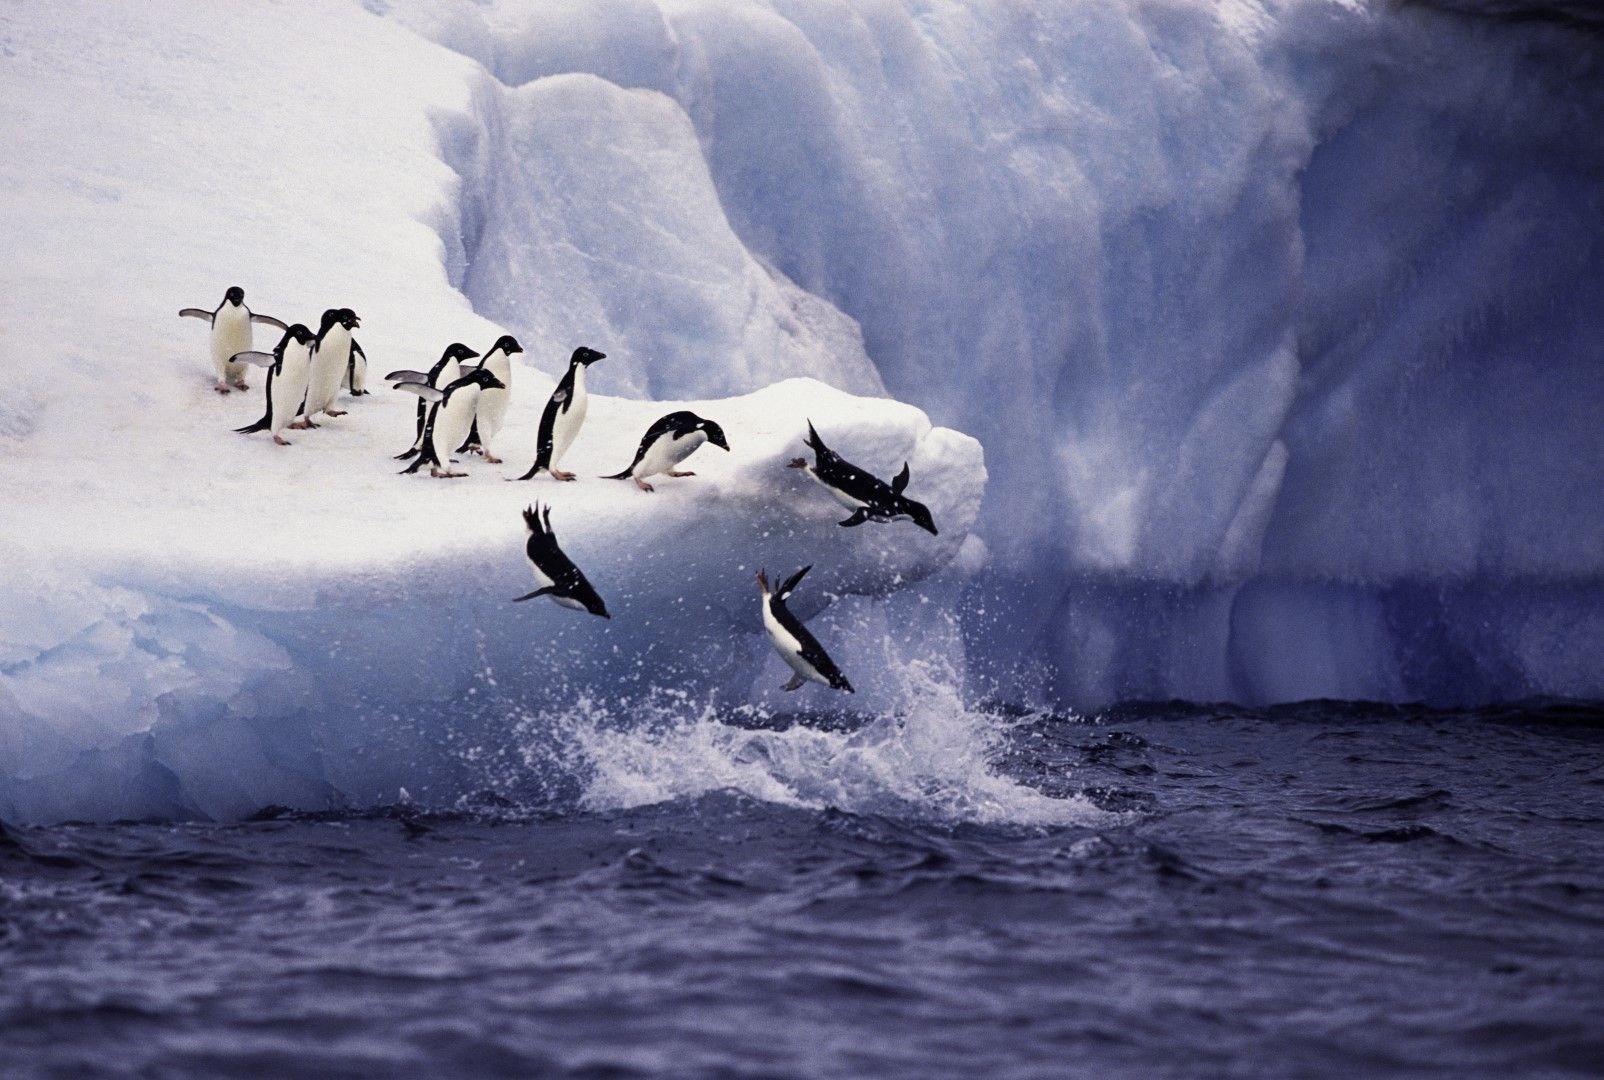 антарктическият леден шелф е загубил 12 трилиона тона маса от 1997 година